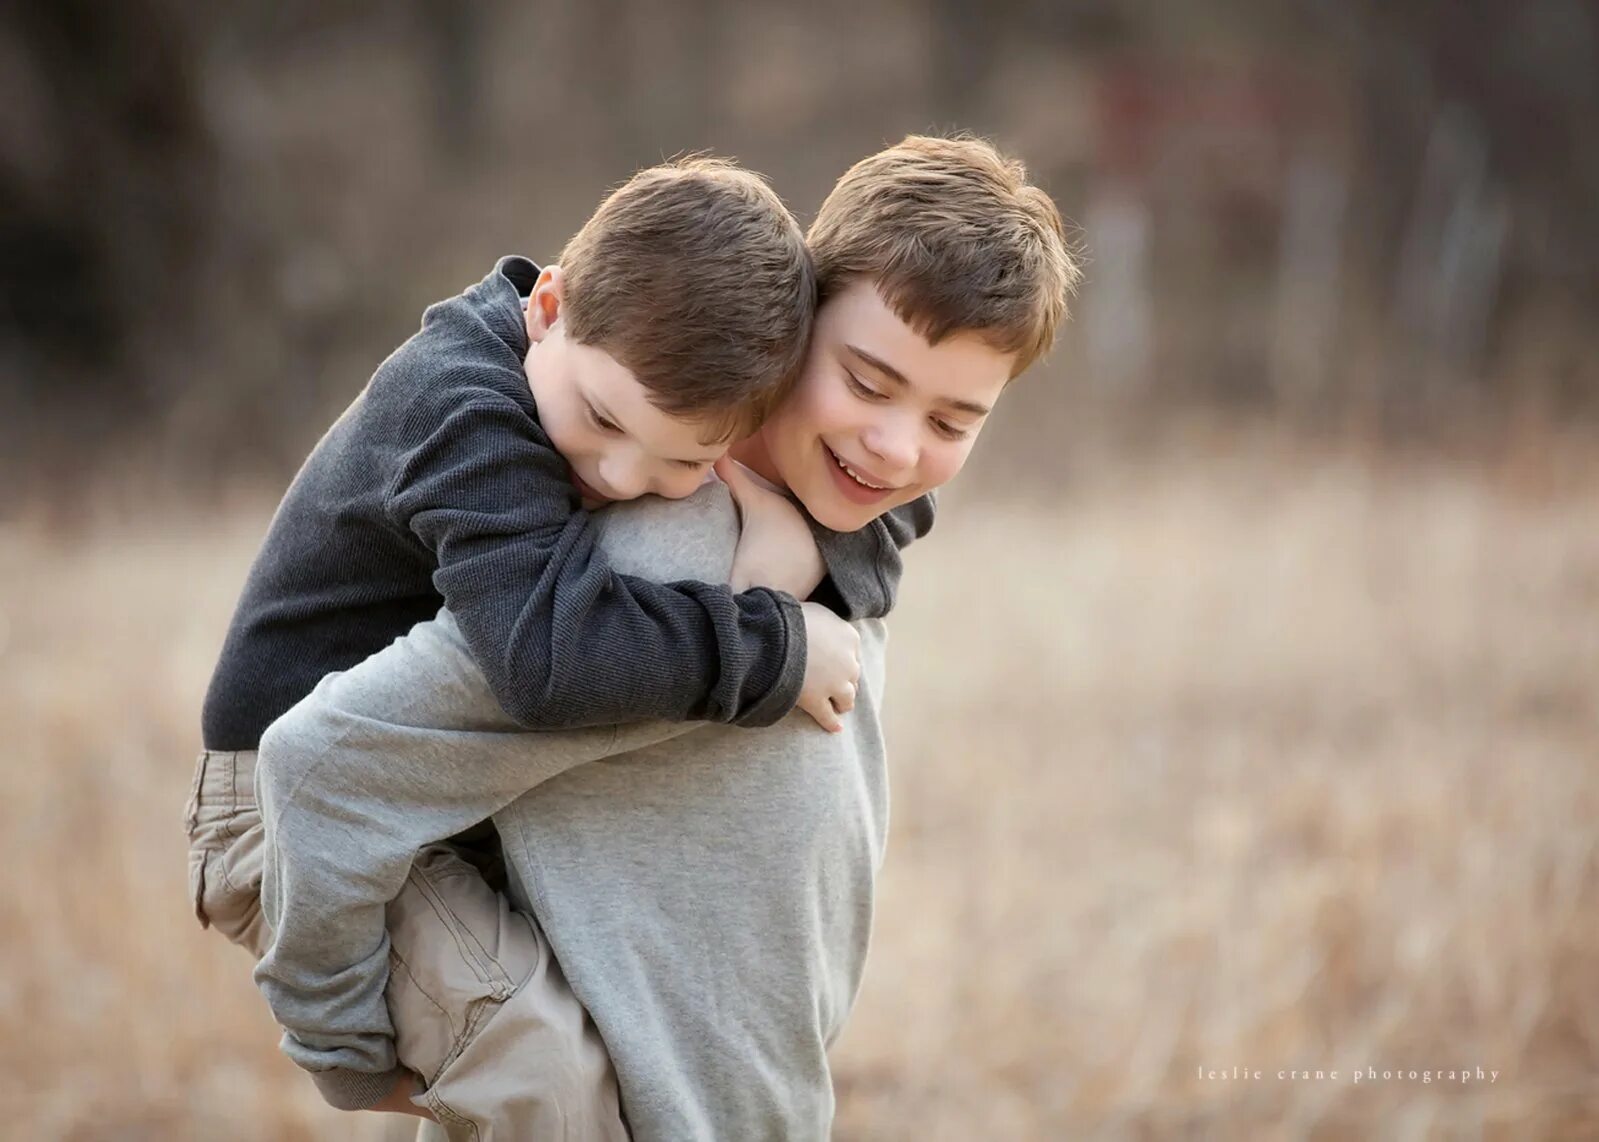 Как обнять мальчика. Мальчики обнимаются. Два пальчика обнимаются. Два мальчика. Два мальчика обнимаются.